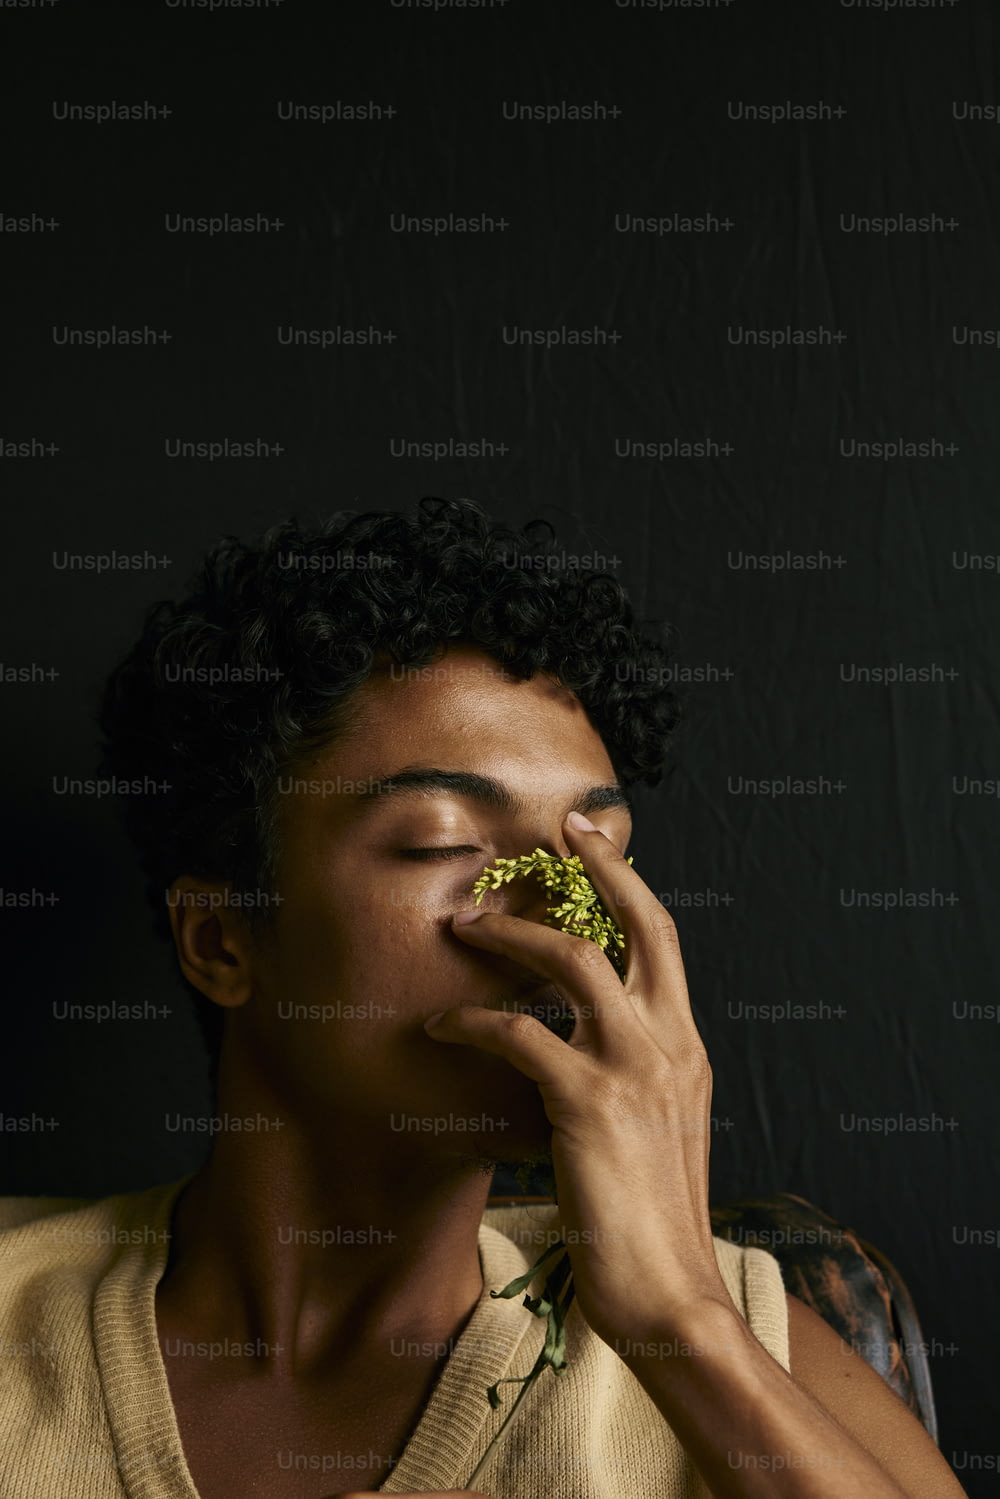 Un hombre comiendo un trozo de brócoli con los ojos cerrados